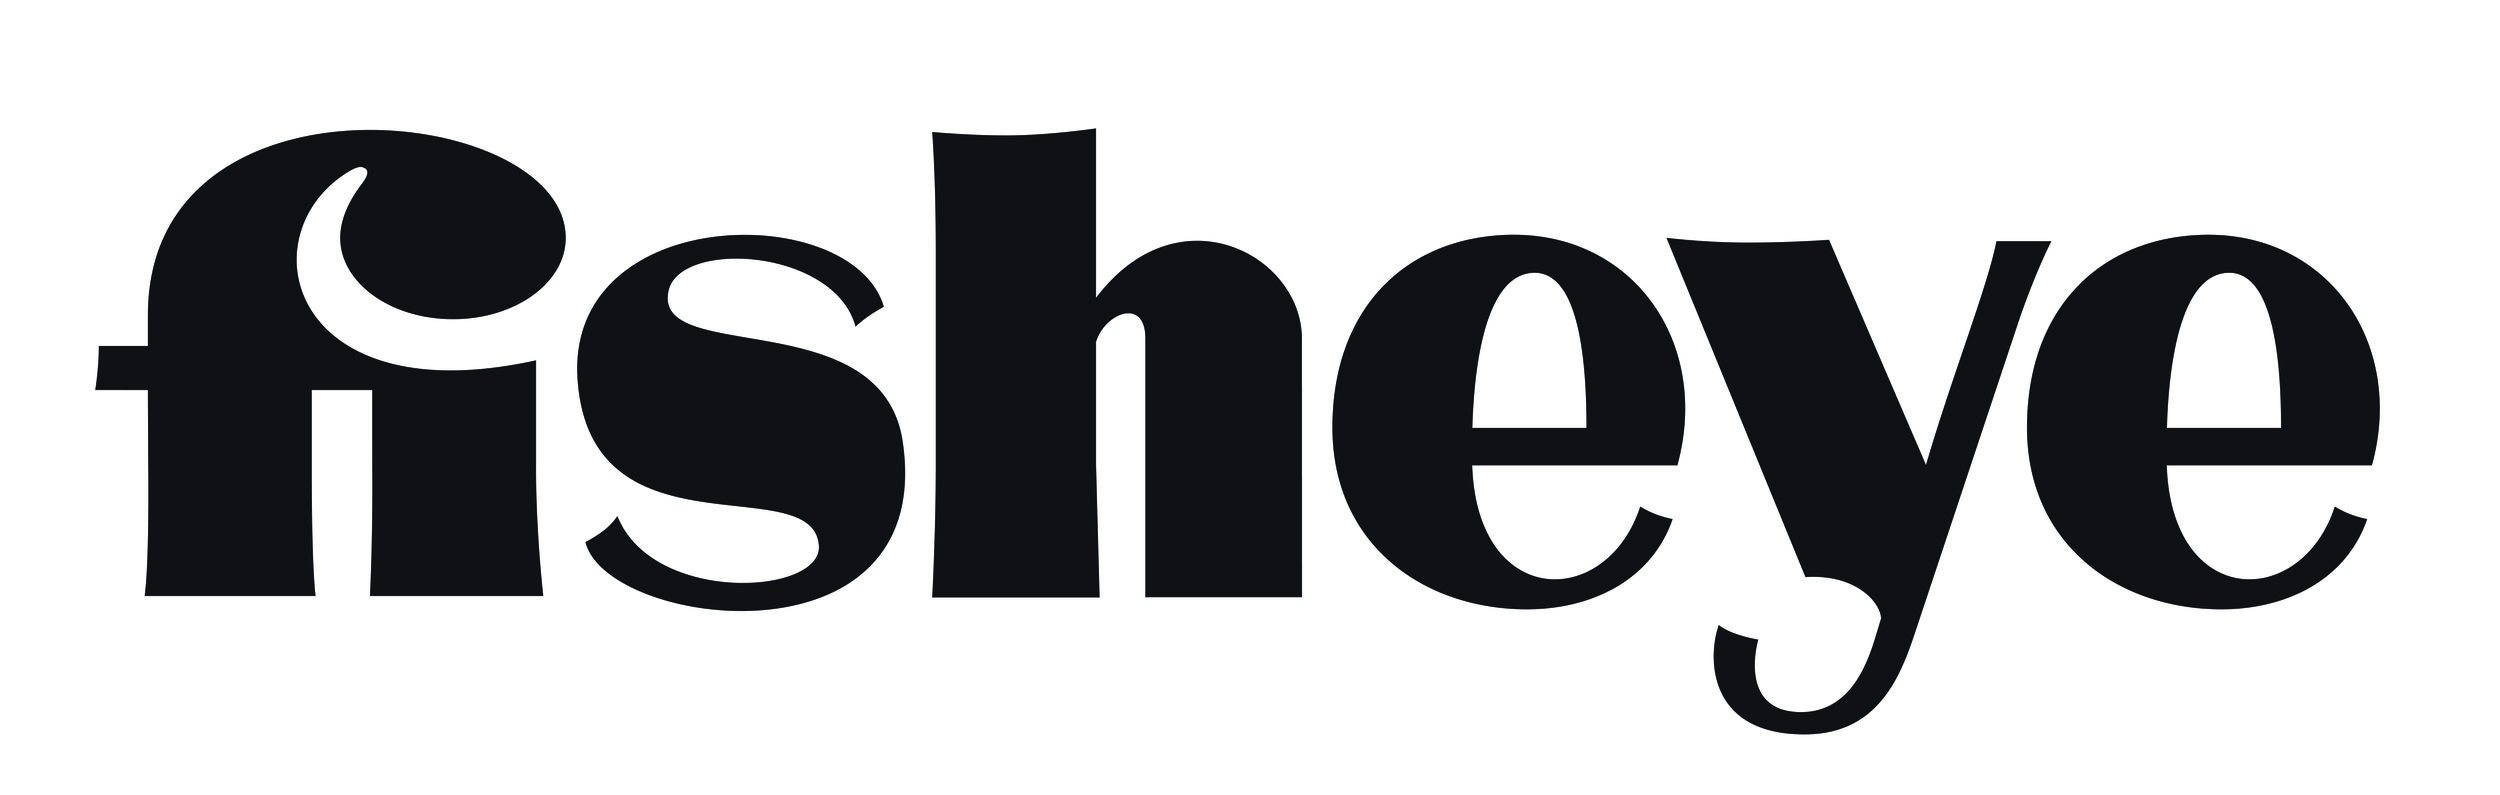 Logo_fisheye.jpg